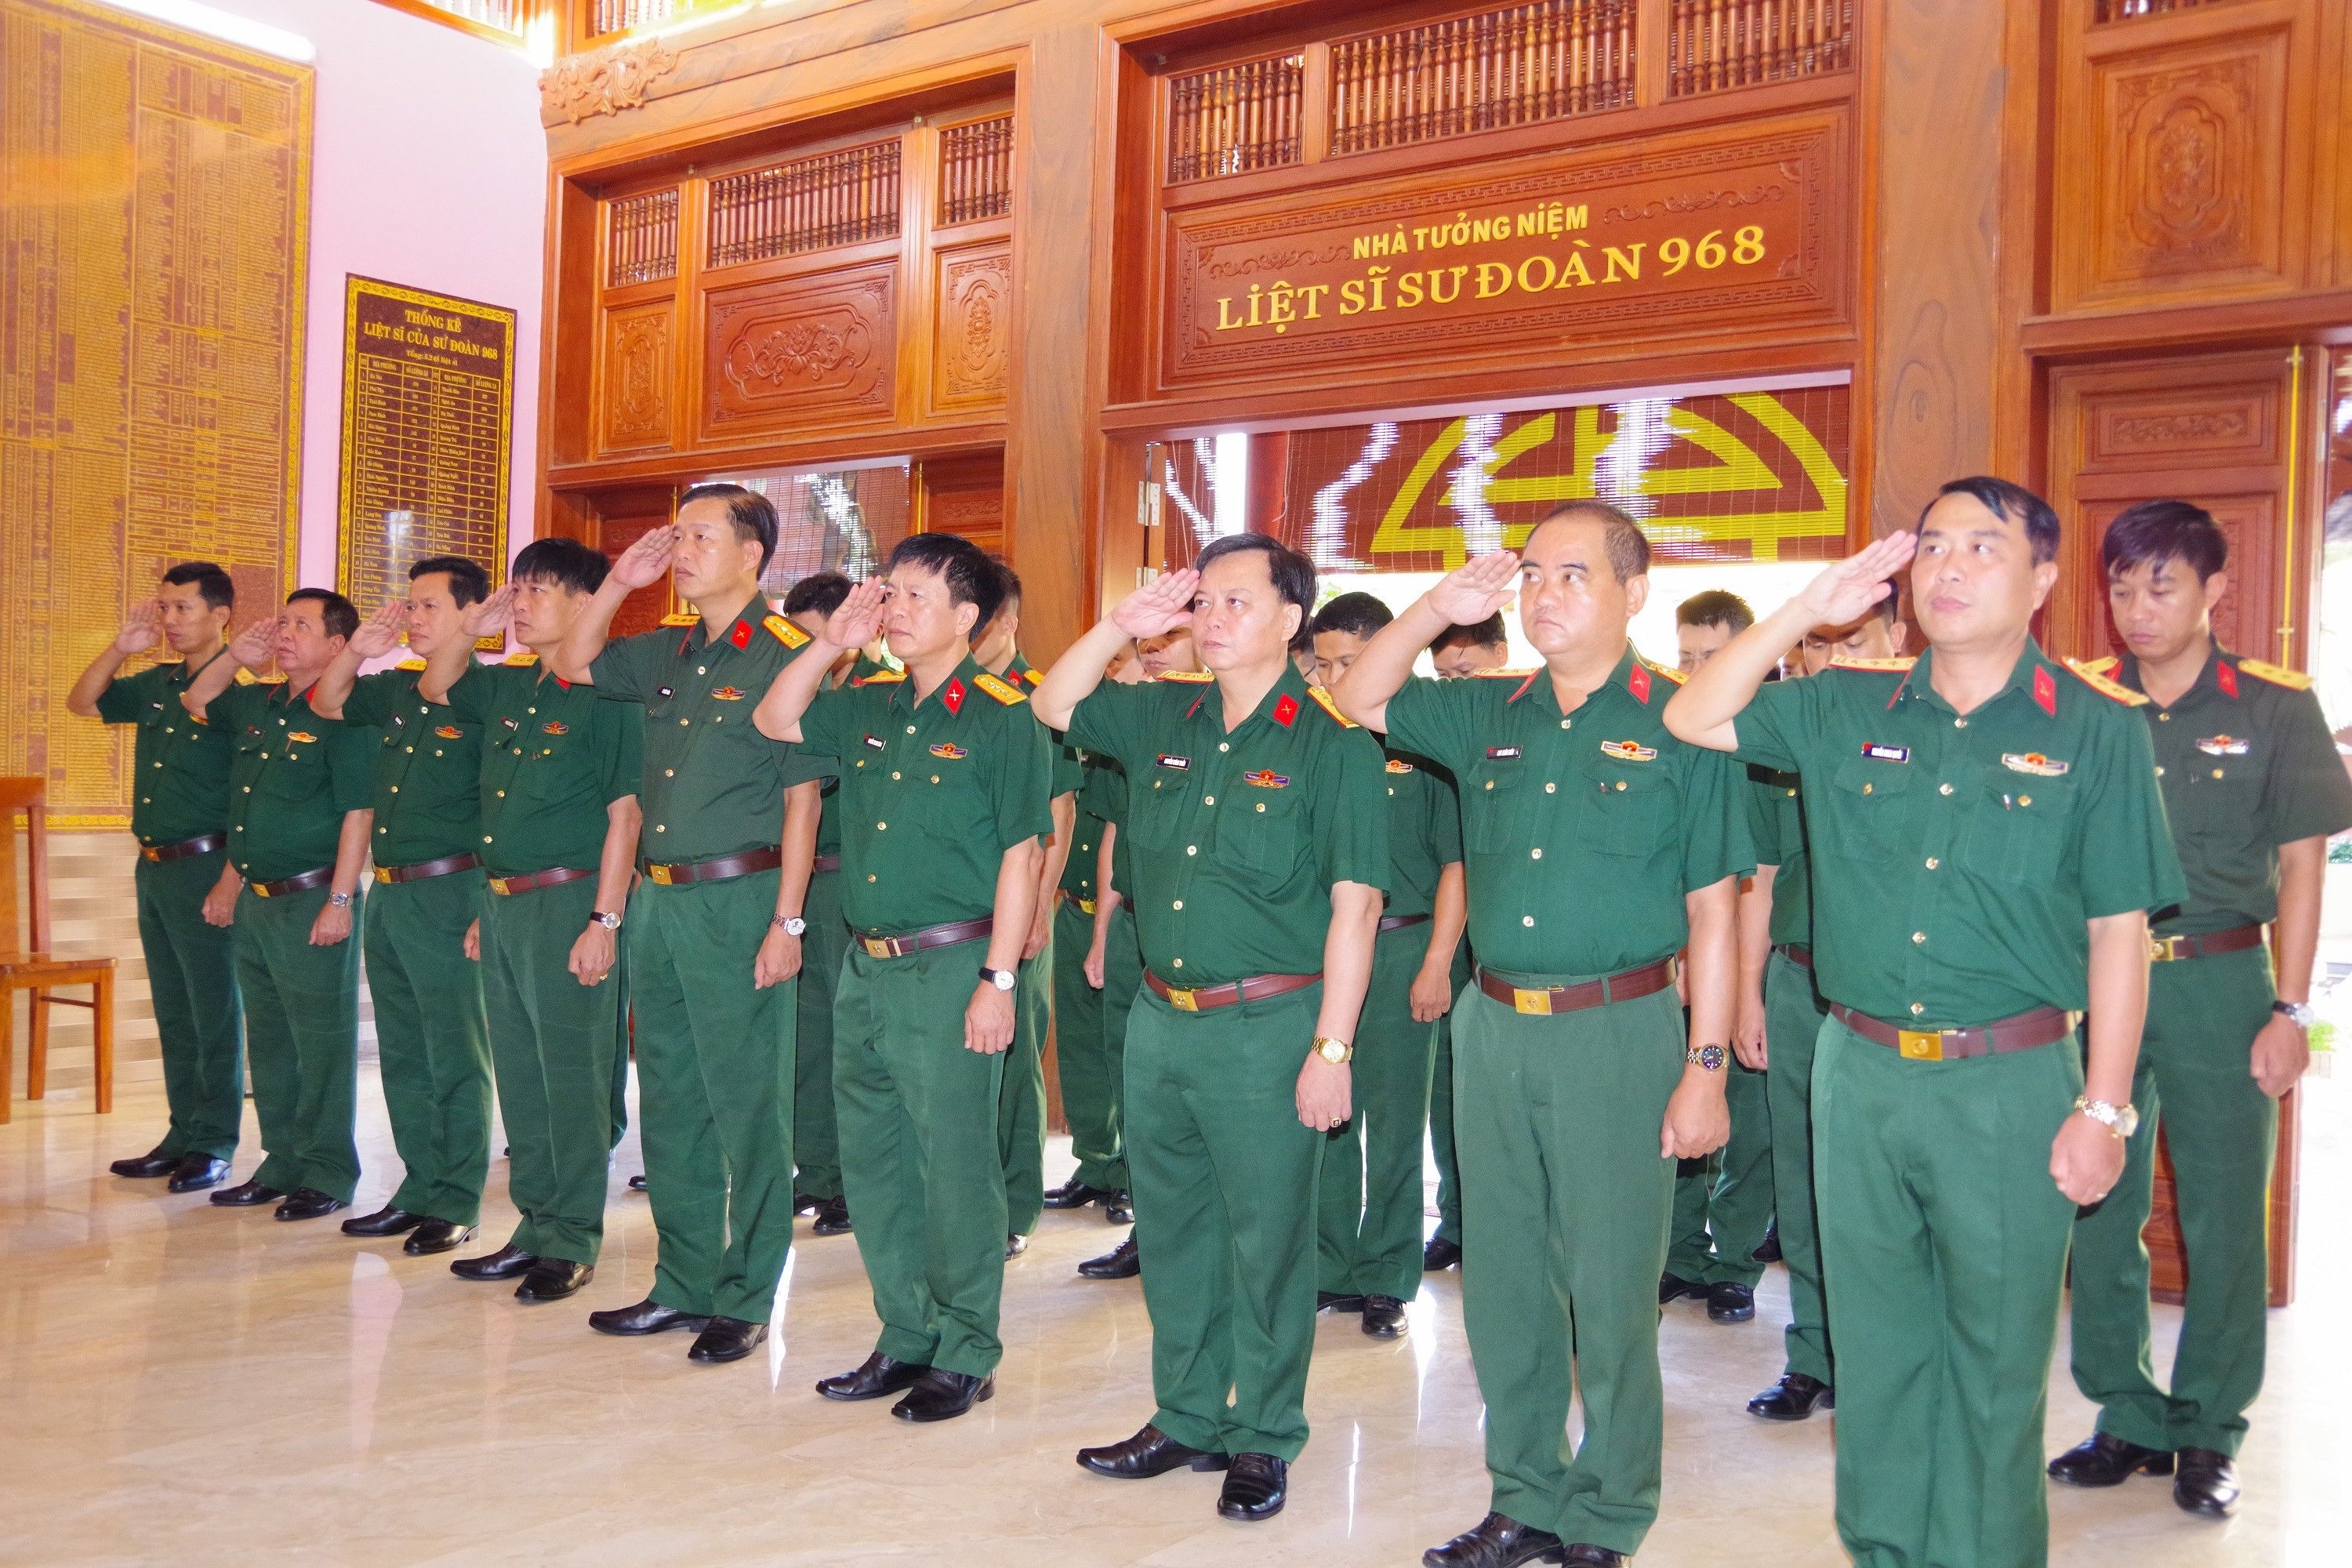 Sư đoàn 968 (Quân khu 4) tri ân Chủ tịch Hồ Chí Minh nhân Ngày truyền thống